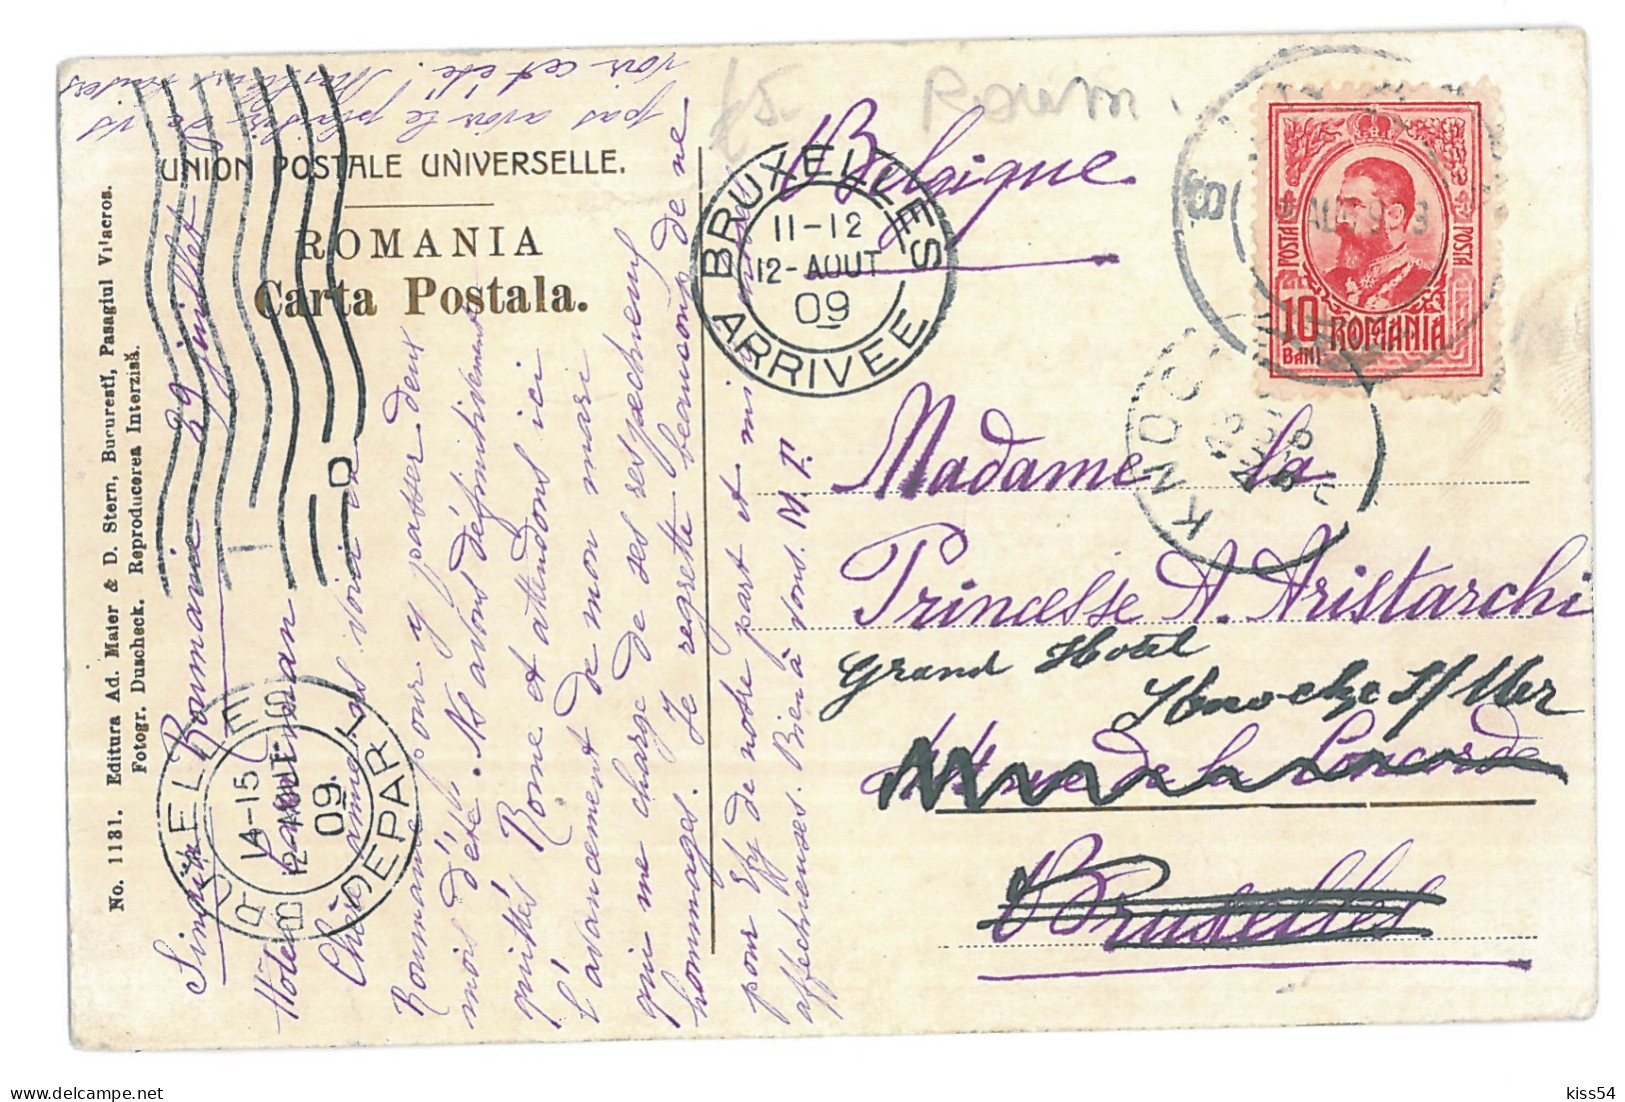 RO 52 - 15795 SINAIA, Panorama, Romania - Old Postcard - Used - 1909 - Rumania